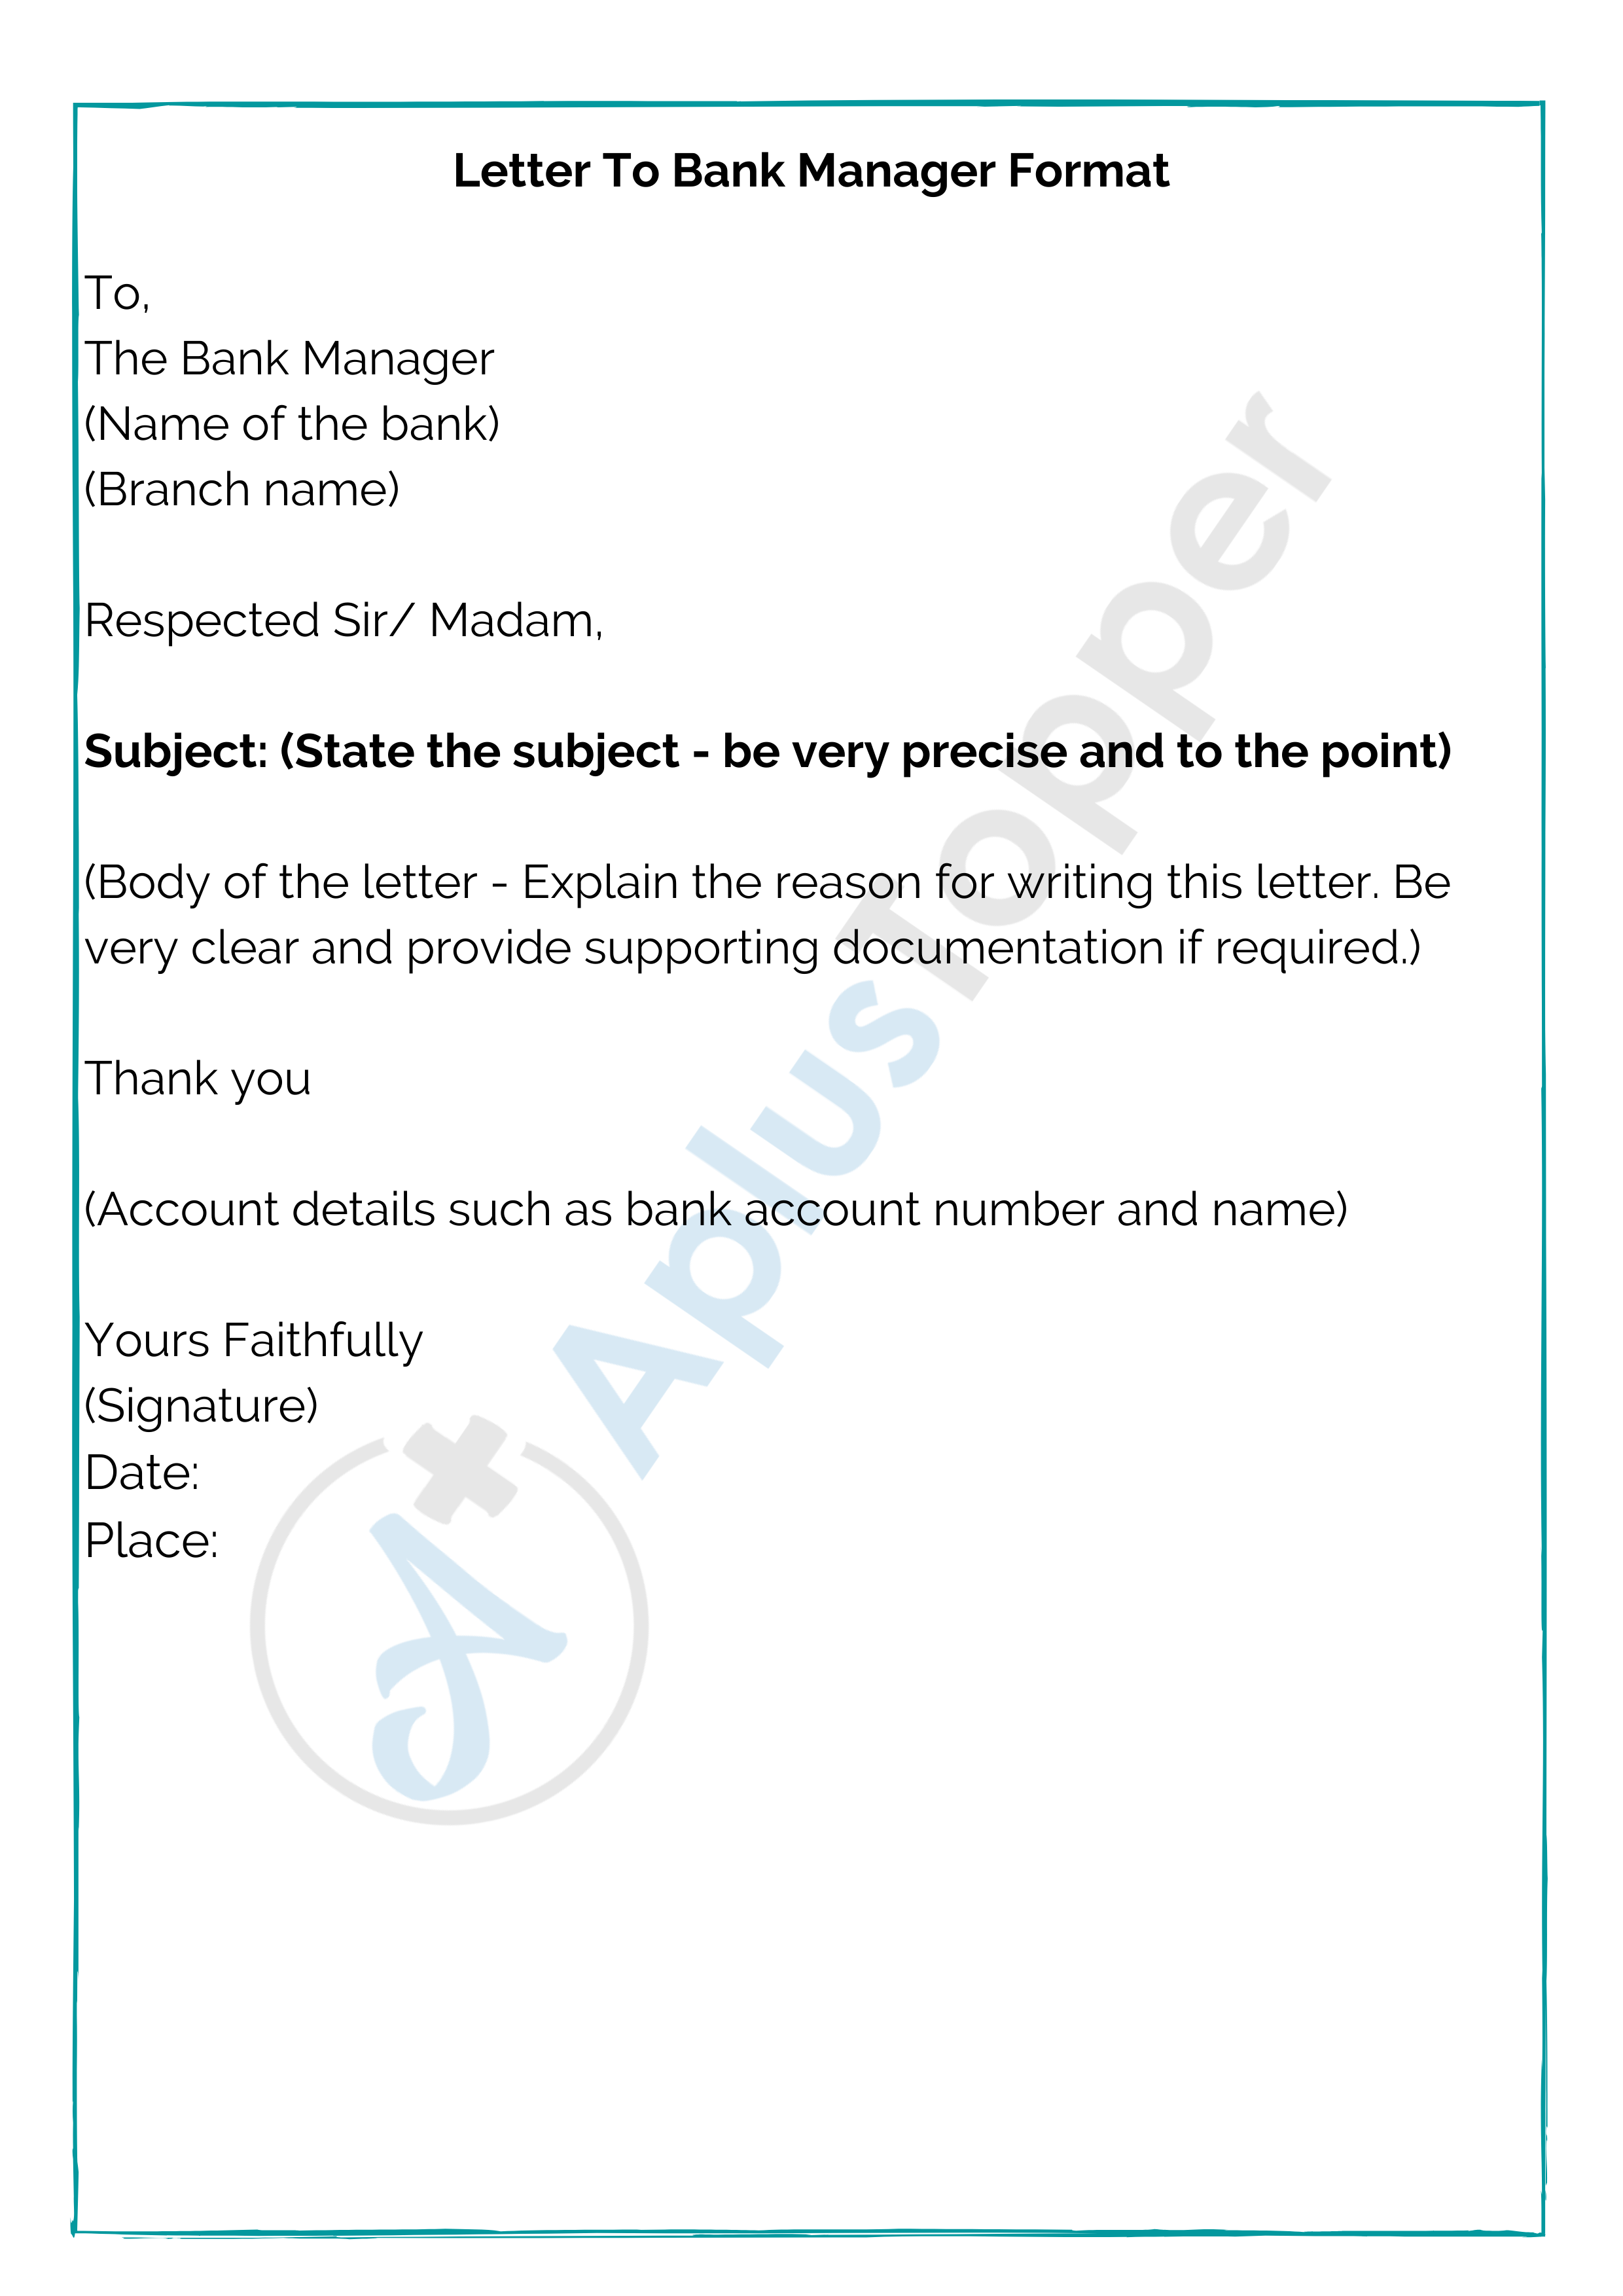 application letter format for bank manager